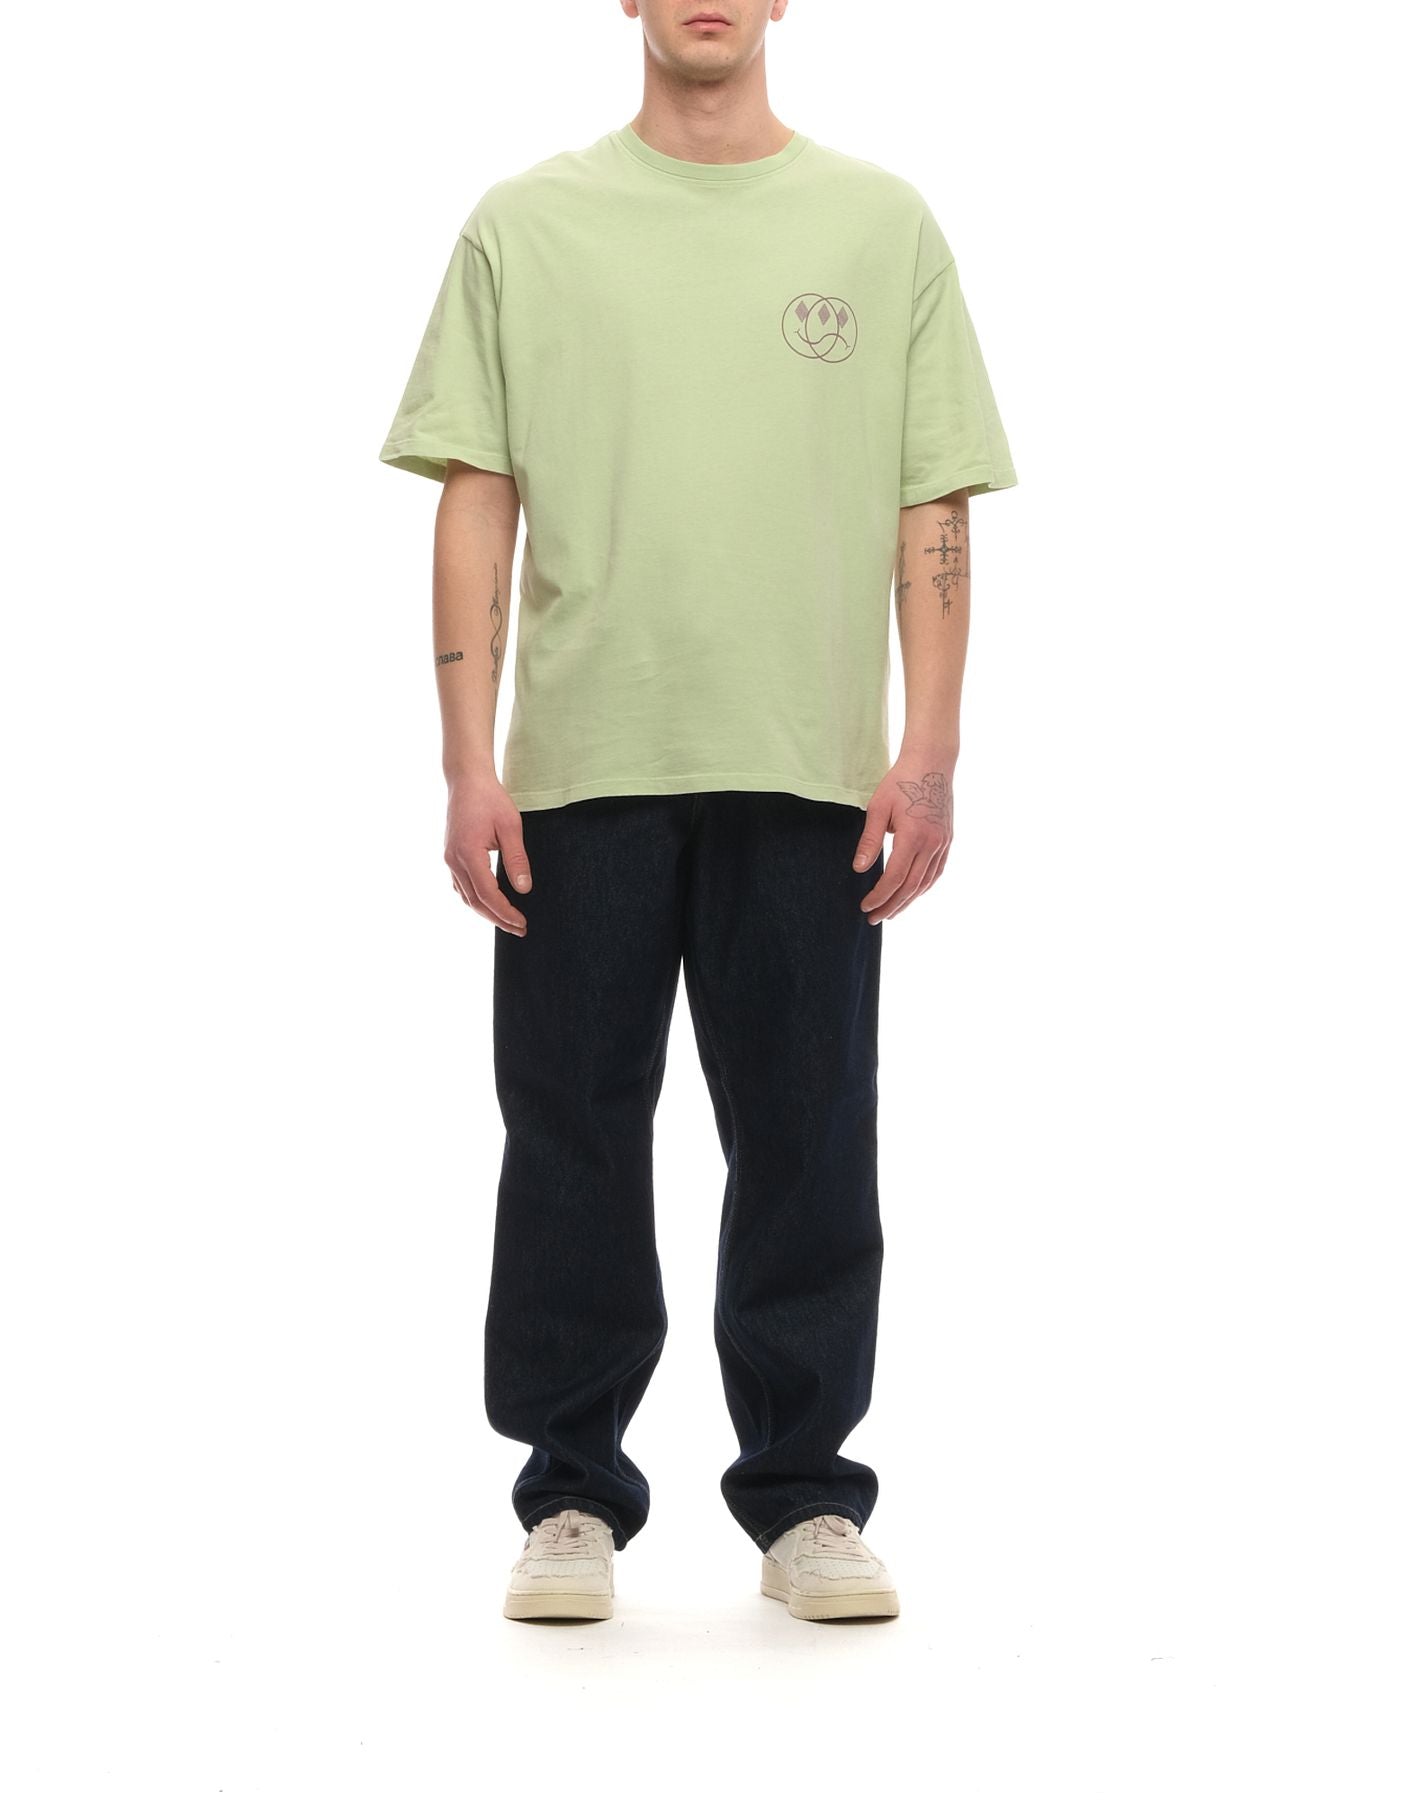 T-shirt pour l'homme p23amu029ca16xxxx vert pâle Amish